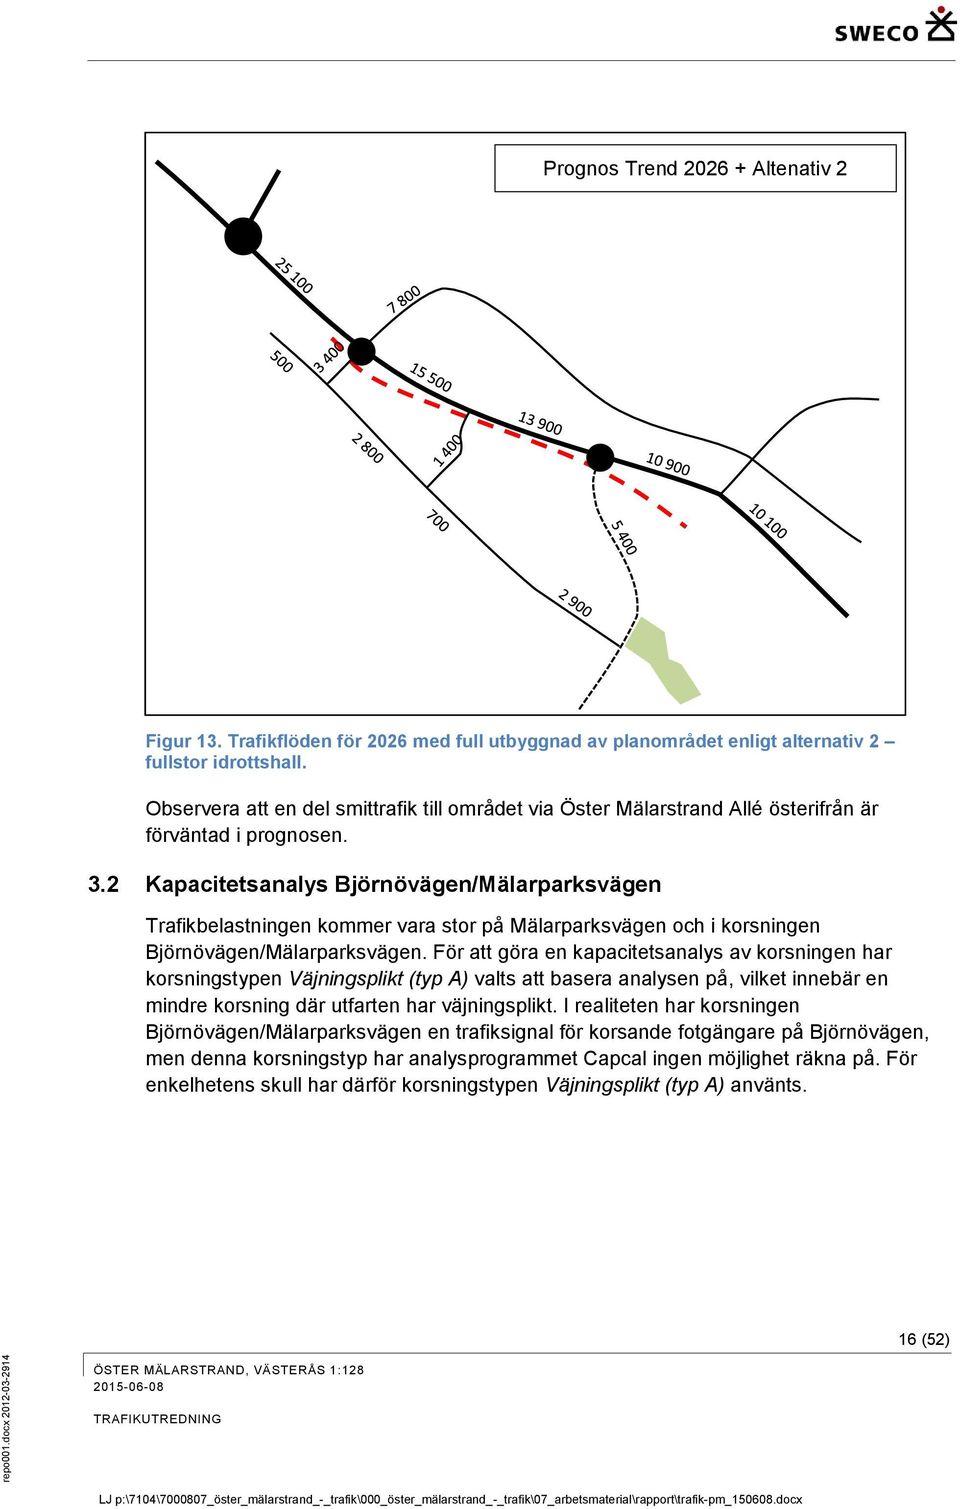 2 Kapacitetsanalys Björnövägen/Mälarparksvägen Trafikbelastningen kommer vara stor på Mälarparksvägen och i korsningen Björnövägen/Mälarparksvägen.